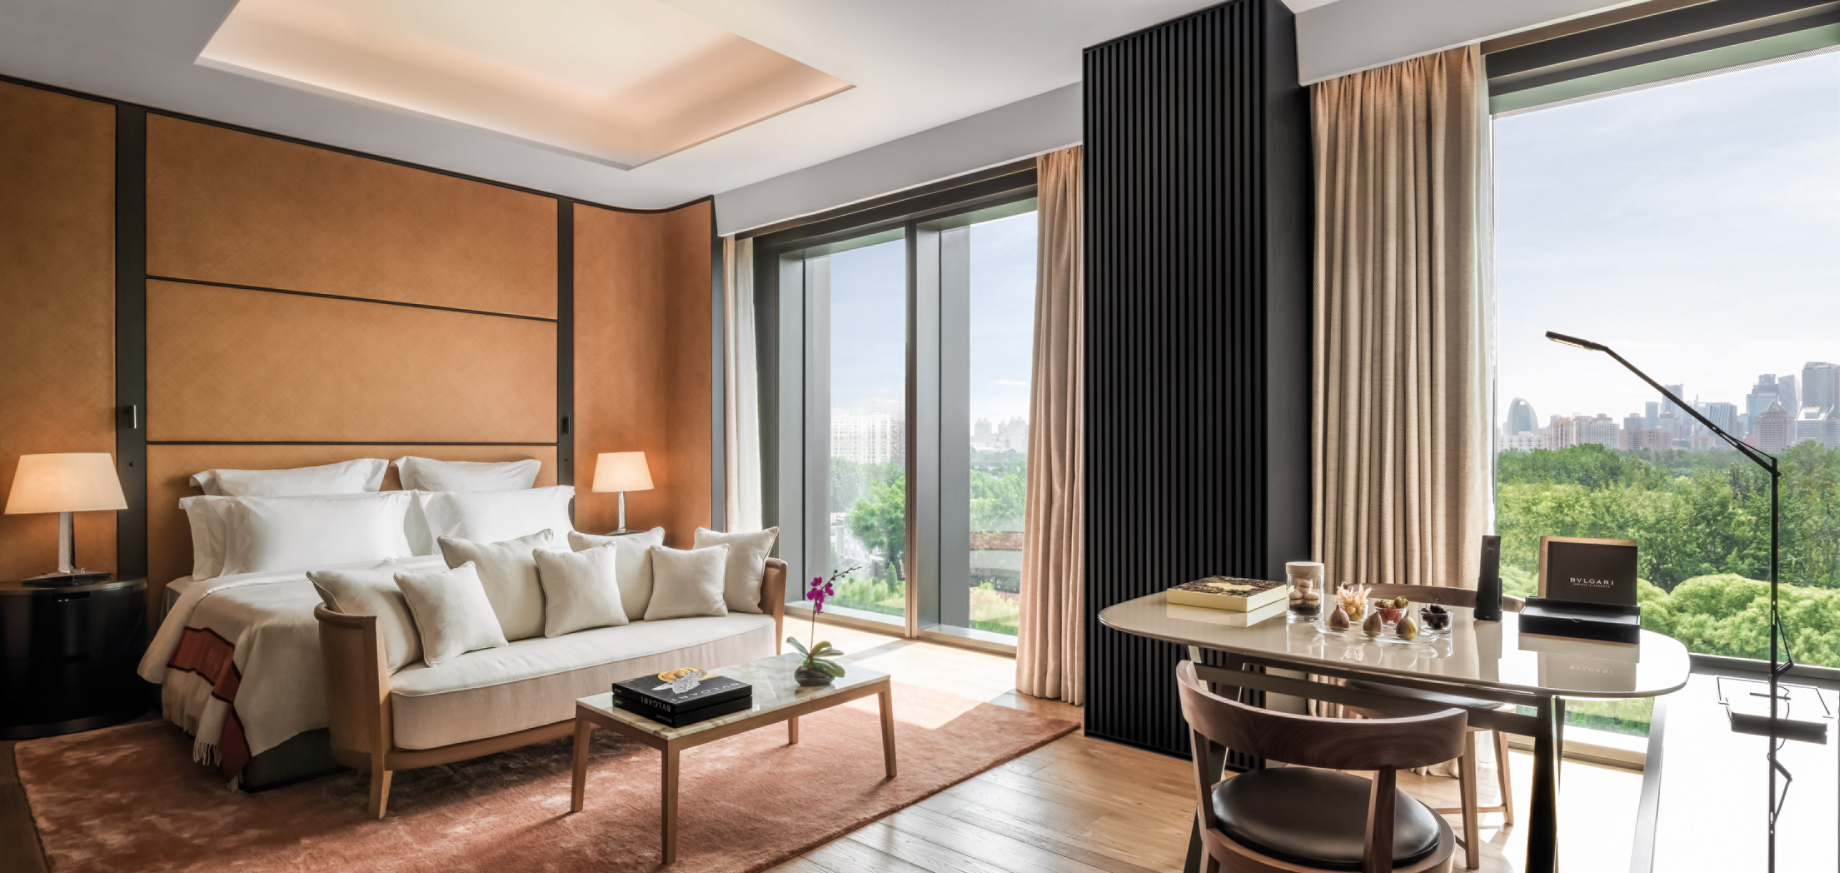 Bvlgari Hotel Beijing - Beijing, China - Guest Suite Bedroom